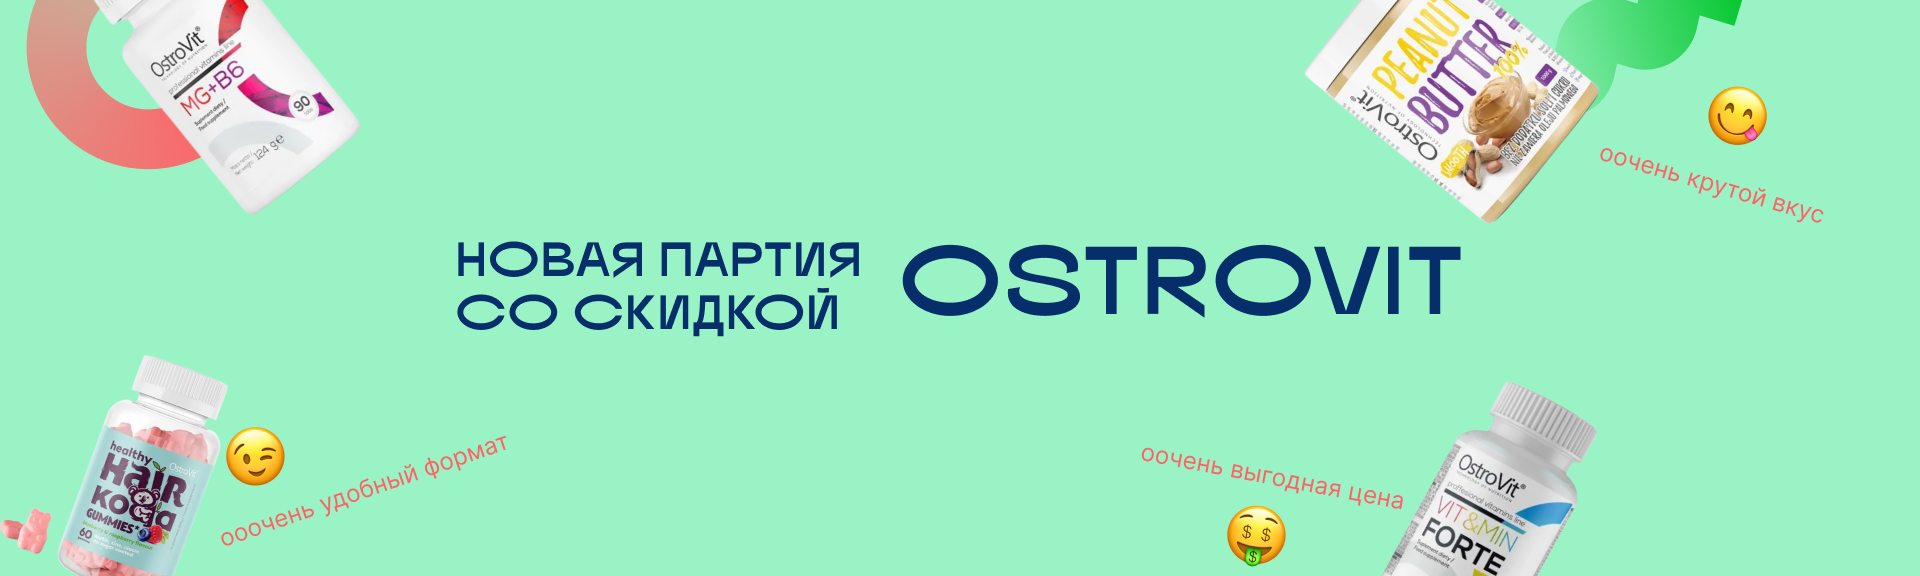 OstroVit: новая партия и скидка 15%